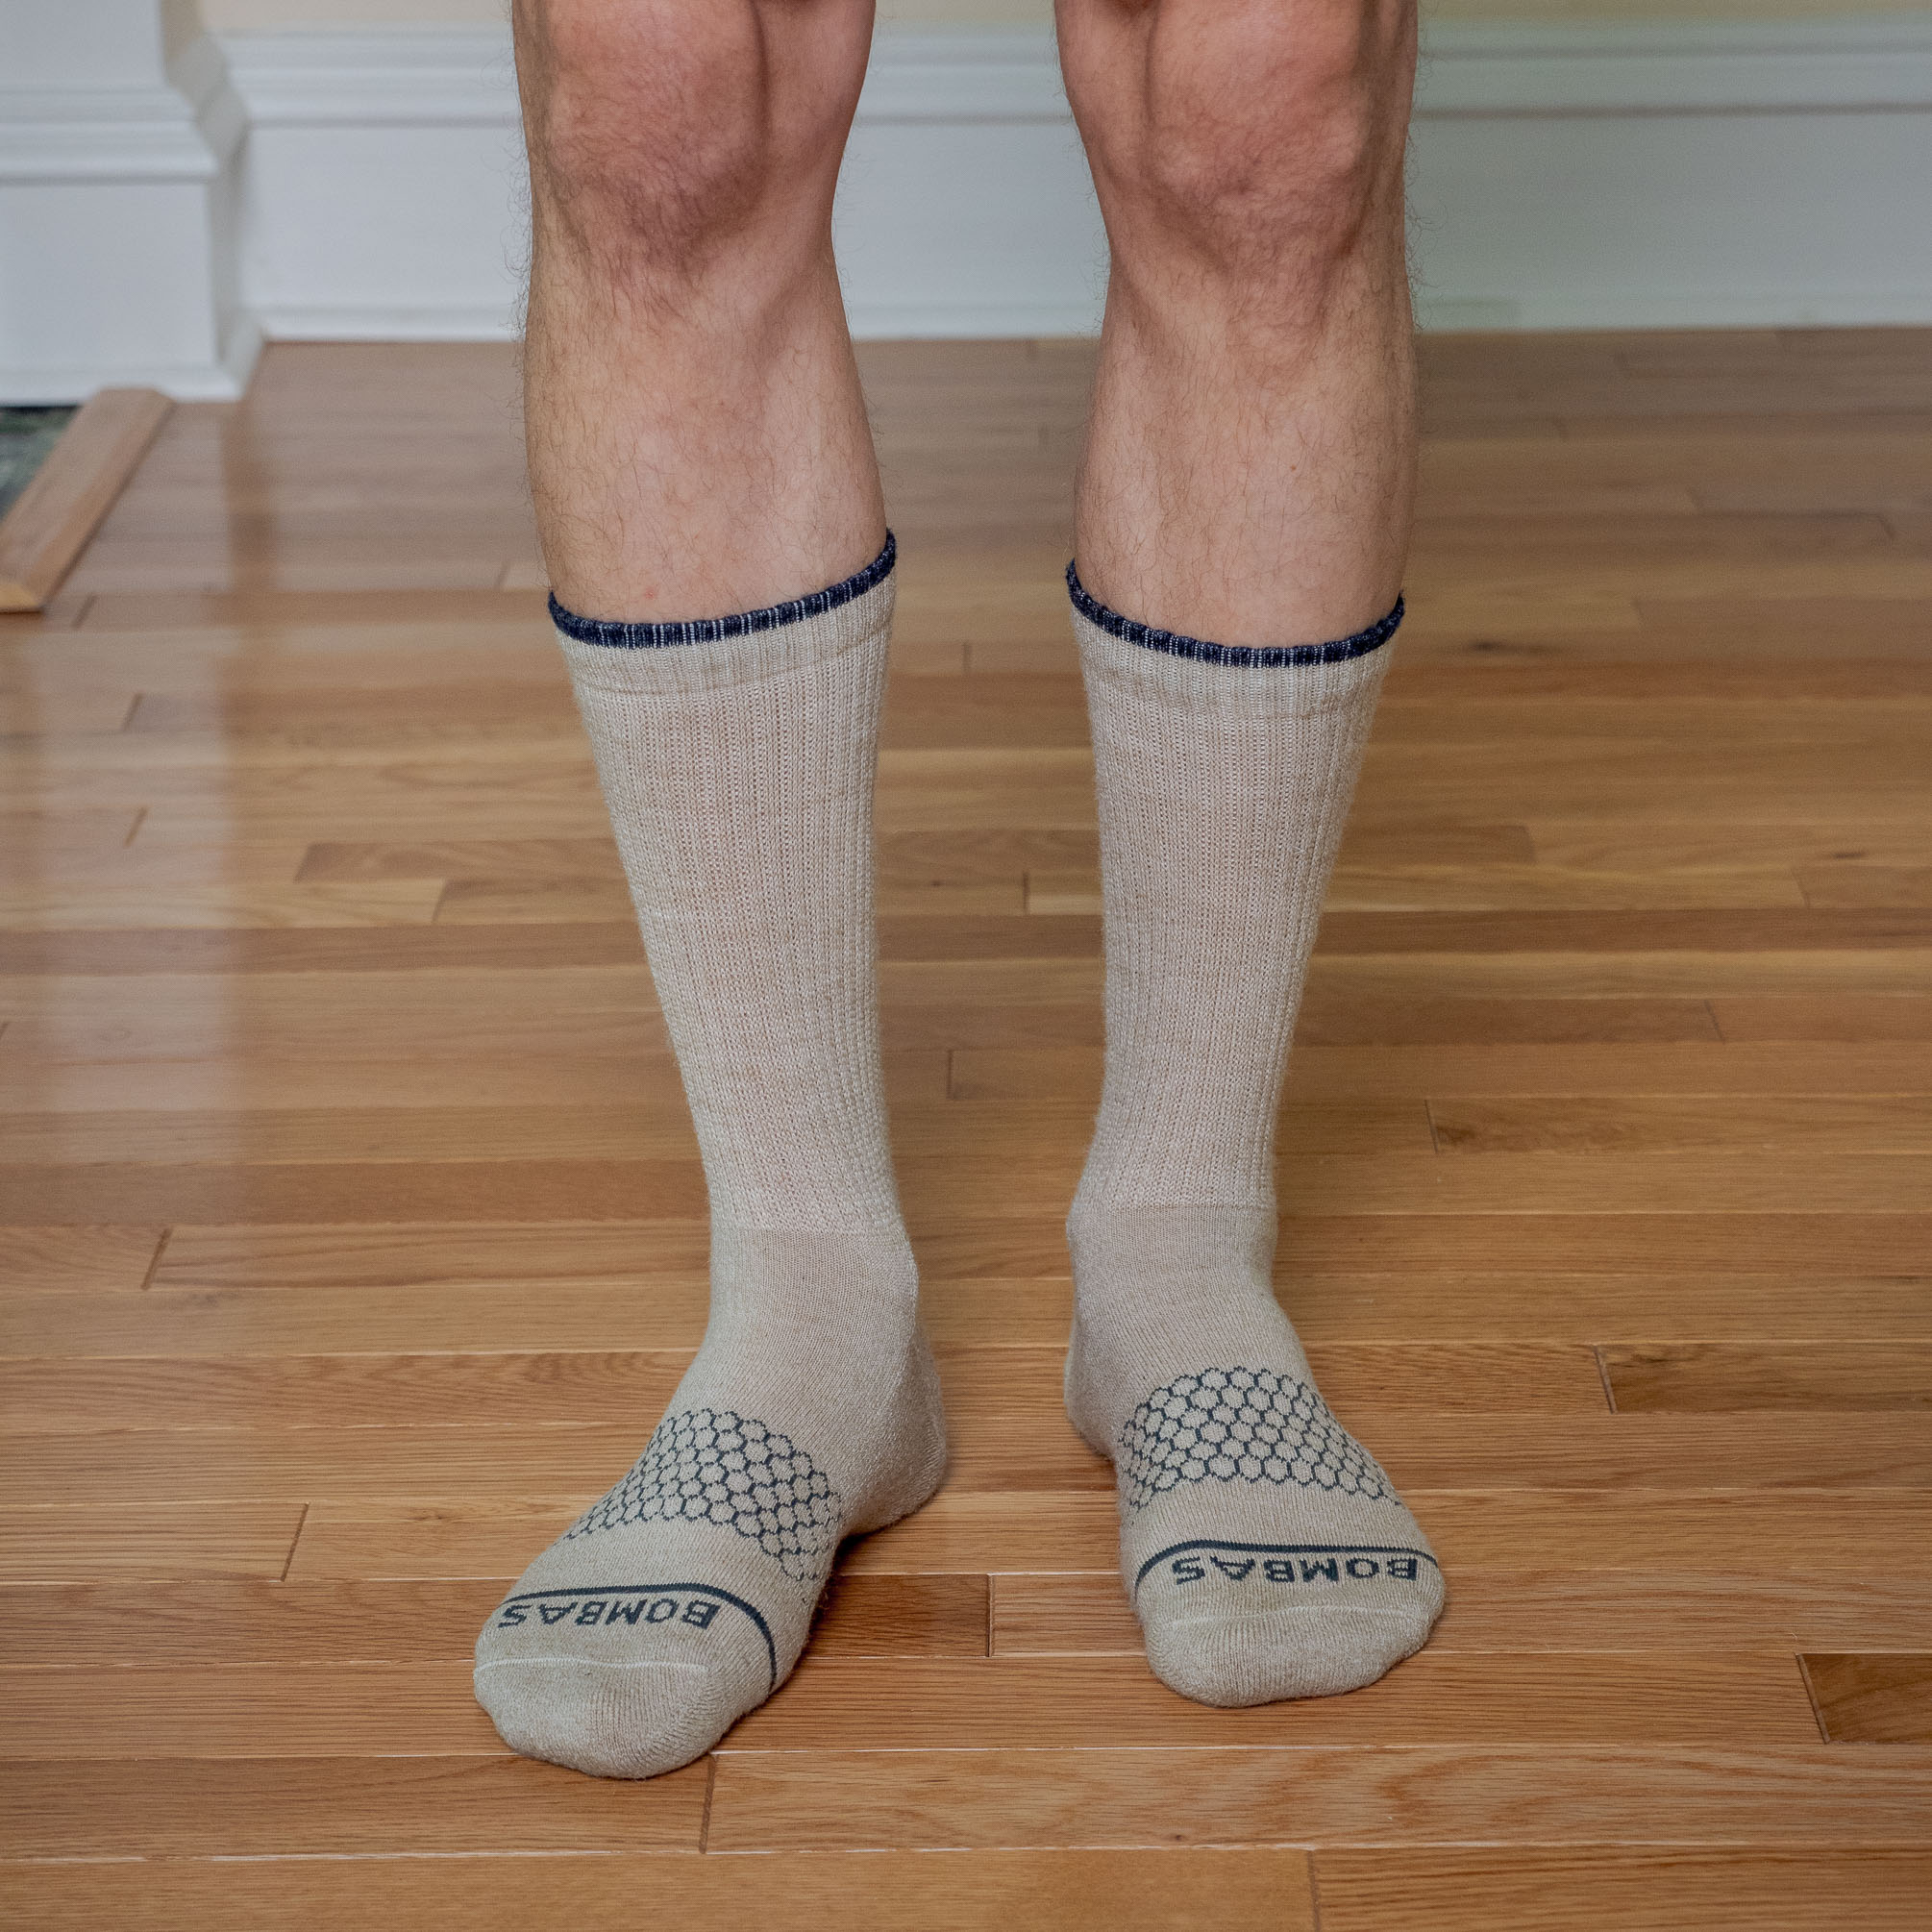 Socks for Women: Crew Length, Ankle, Slouch & More